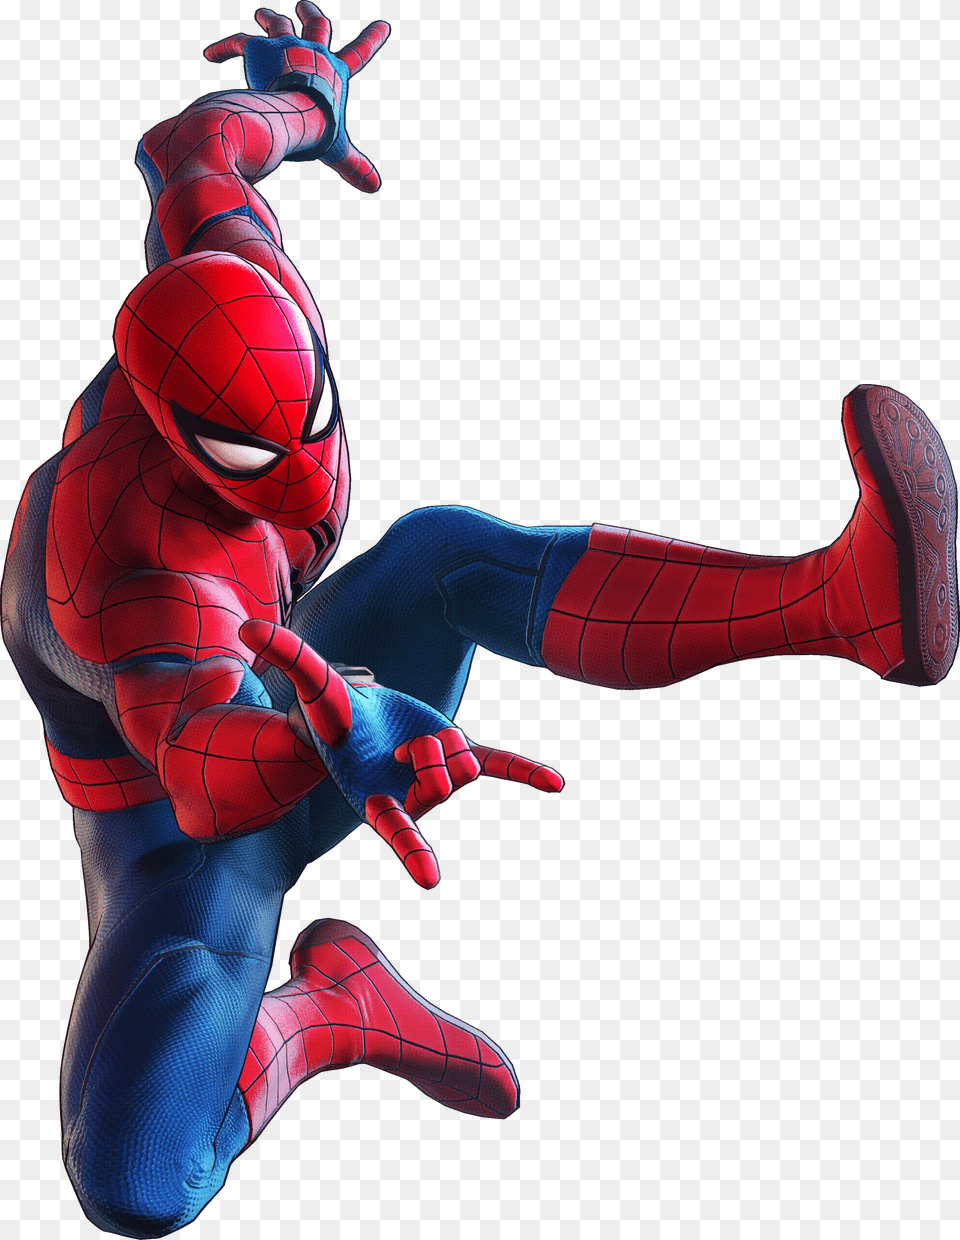 Marvel Ultimate Alliance 3 Spider Man Free Png Download